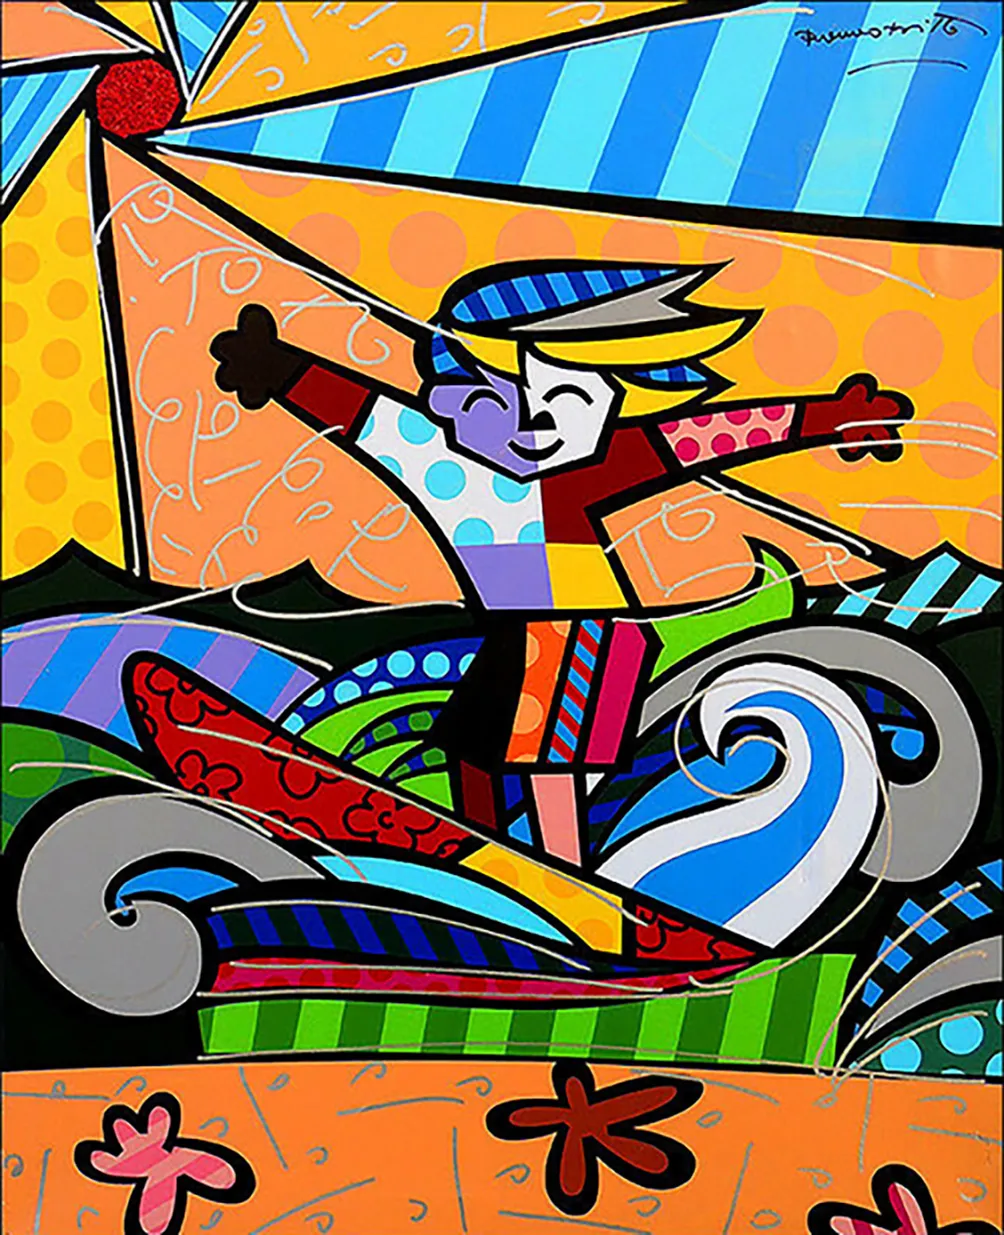 Surfer Boy Duży obraz olejny na płótnie Home Decor Handcrafts / HD Print Print Wall Art Picture Dostosowywanie jest dopuszczalne 21081609